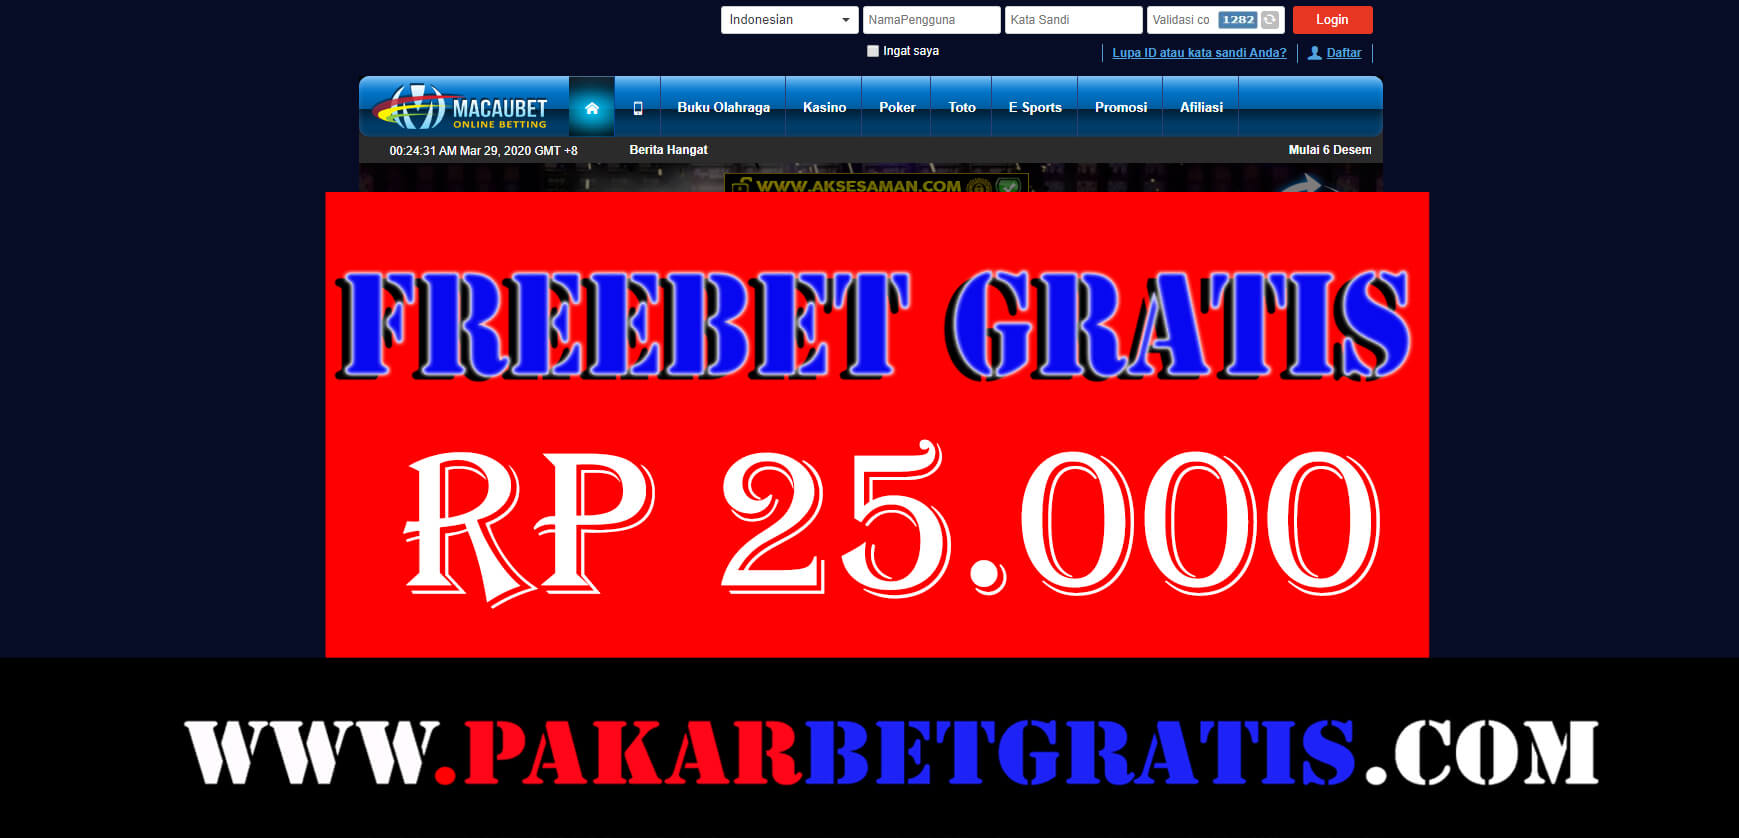 Freebet Gratis macaubet Rp 25.000 tanpa deposit